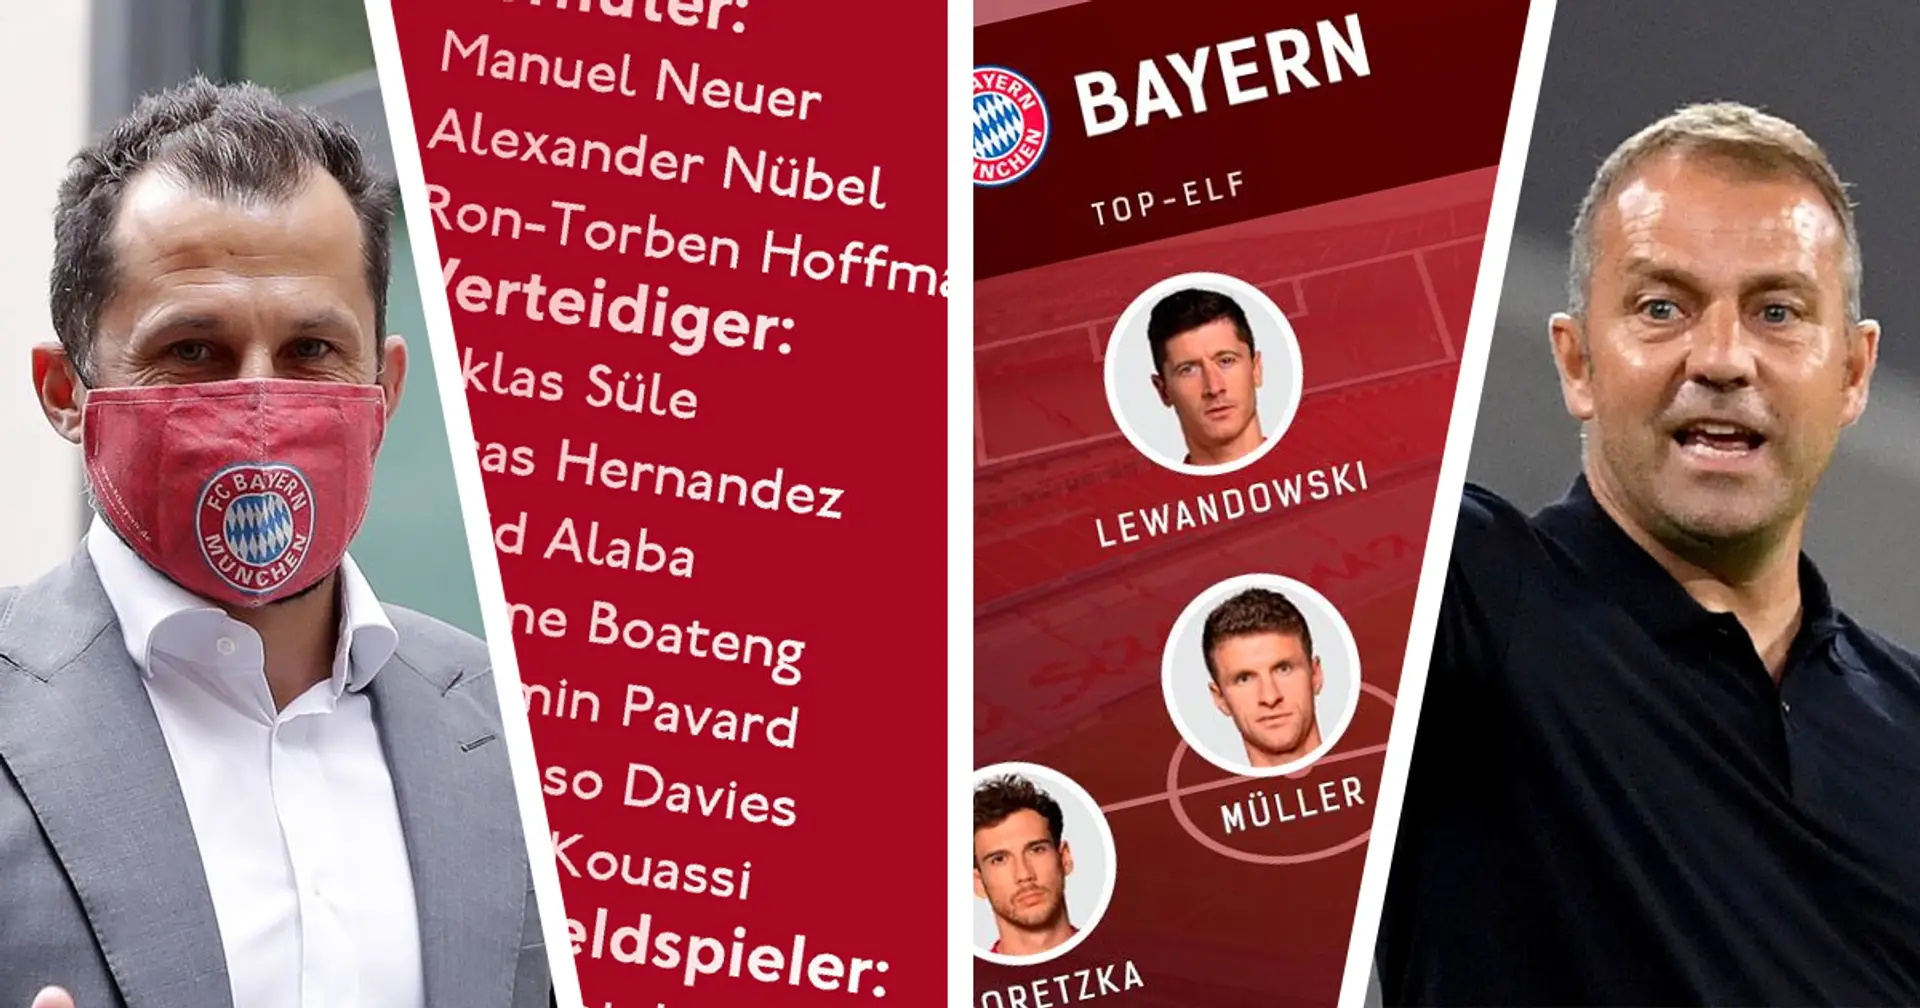 Schwere Saison in Sicht: Top-Elf und dünner Kader des FC Bayern